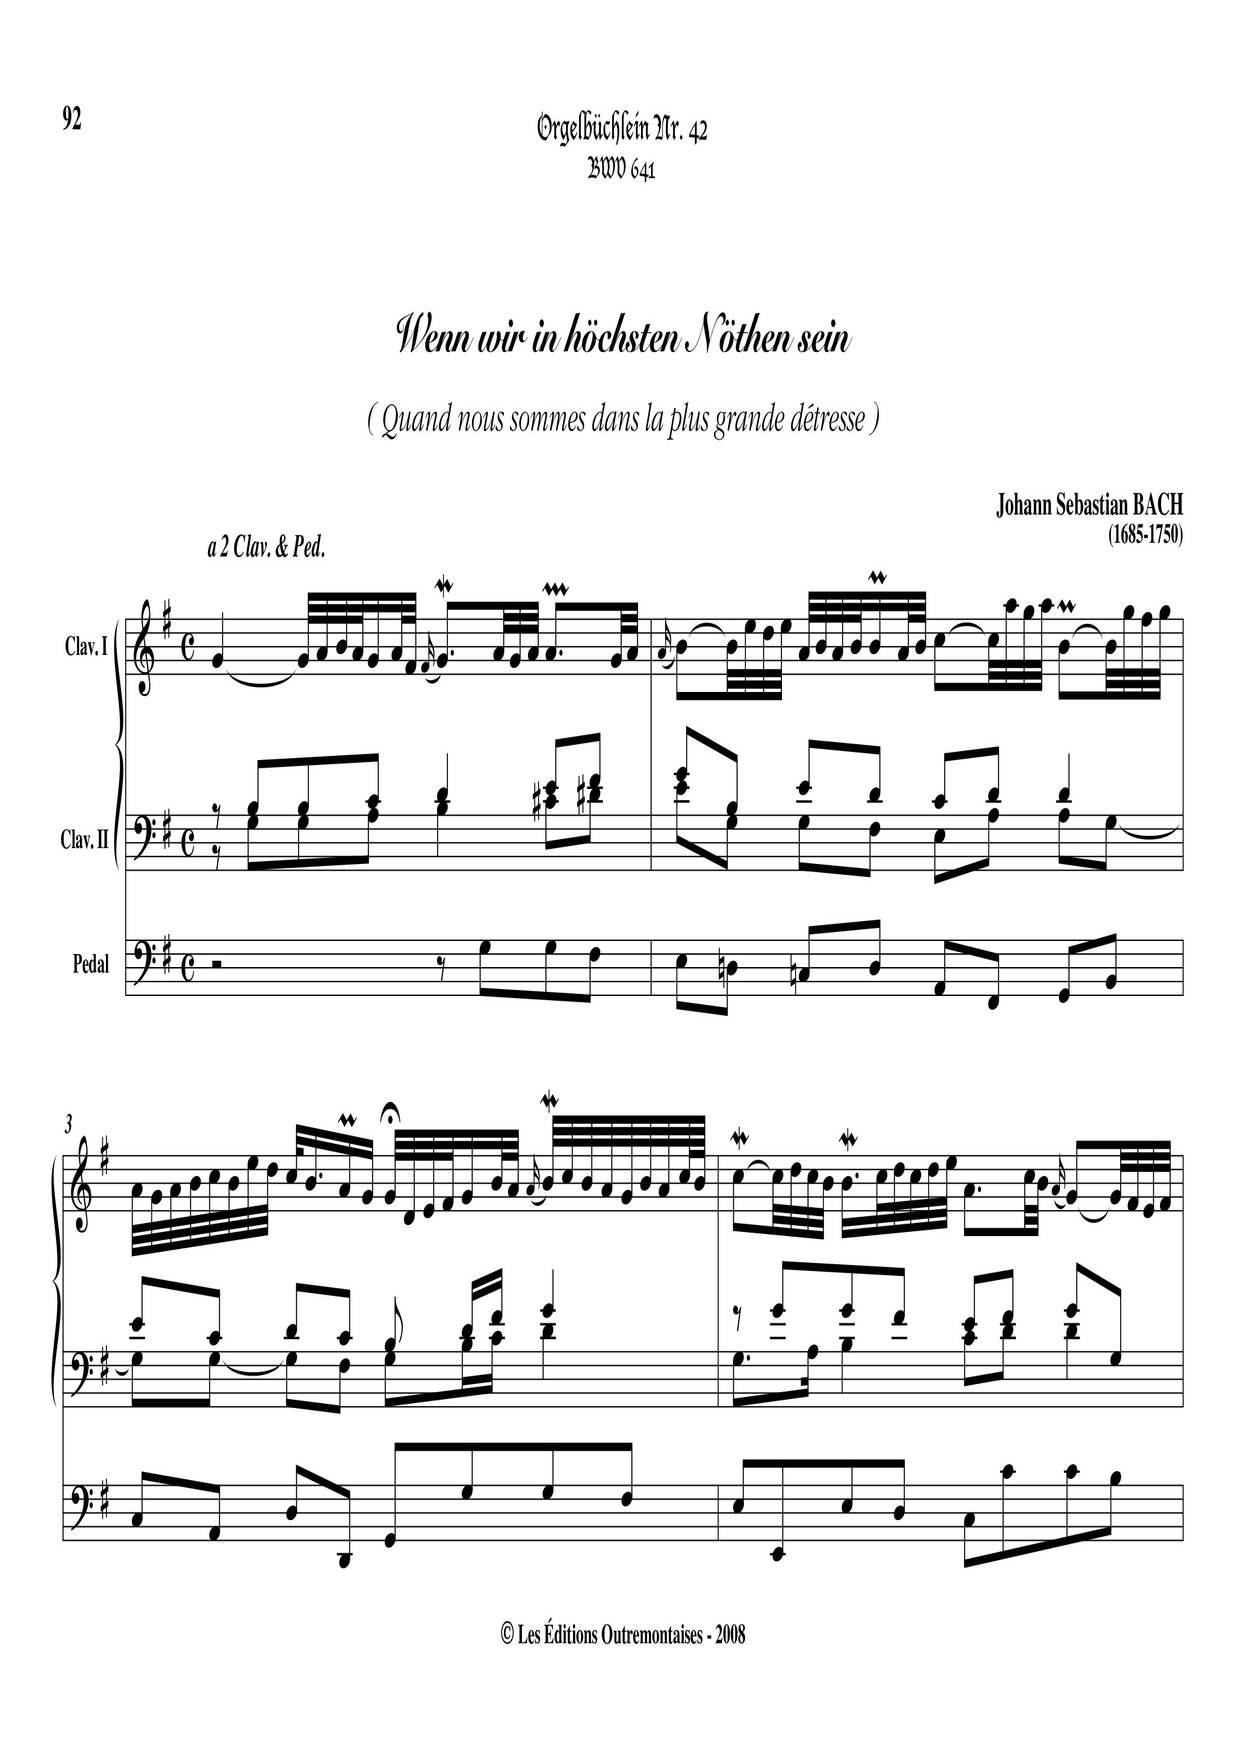 Chorale Prelude 'Wenn Wir In Hochsten Noten Sein', BWV 641 Score